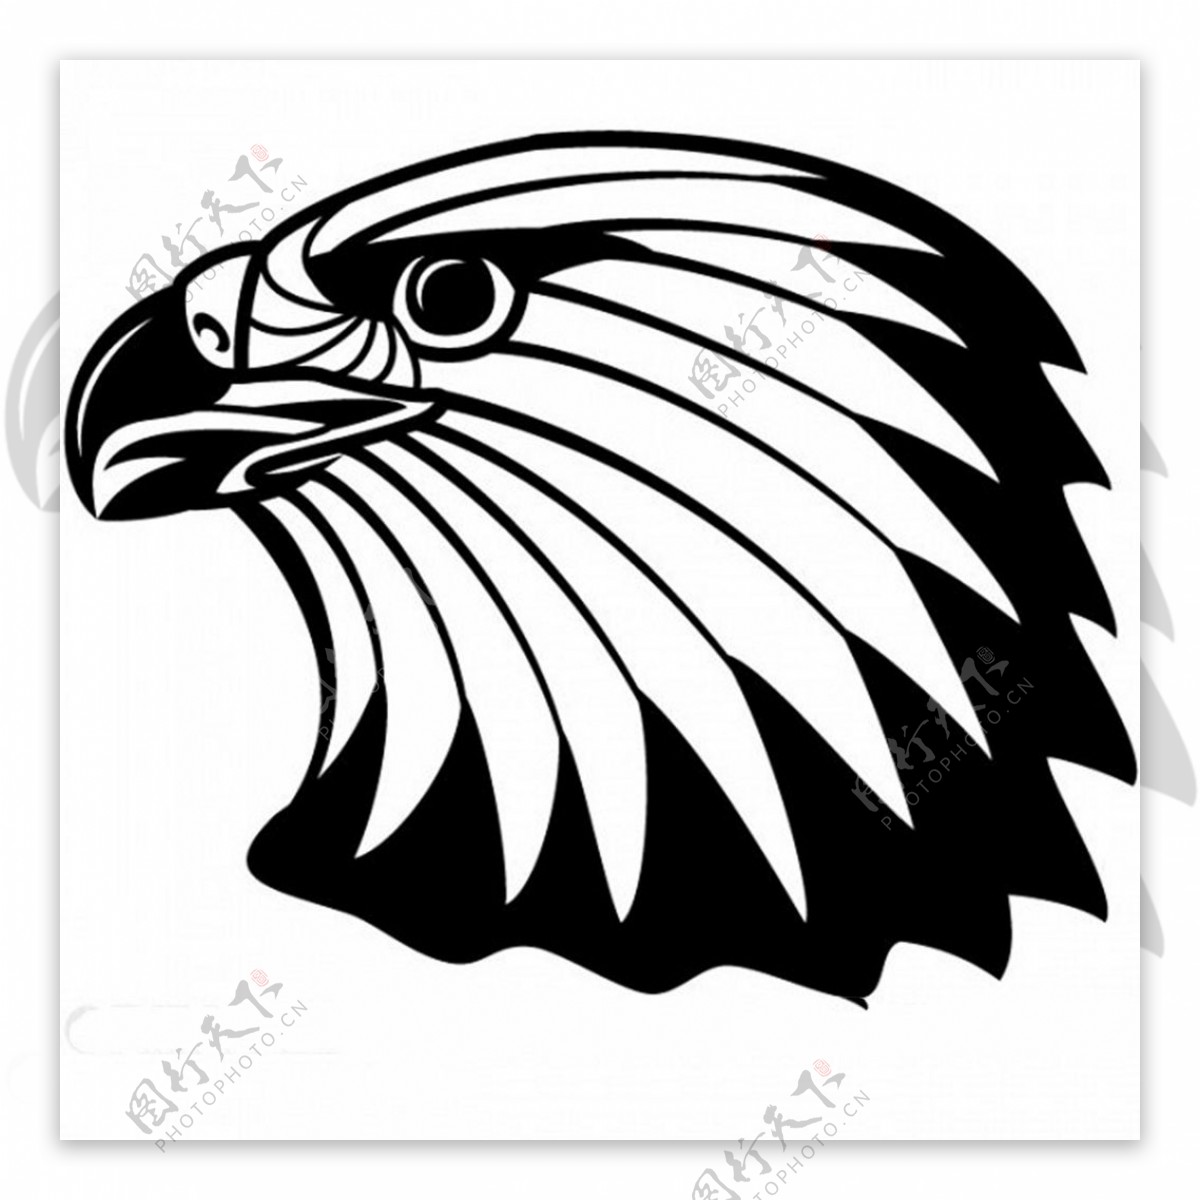 自由向量的秃头鹰的图形标志图标矢量